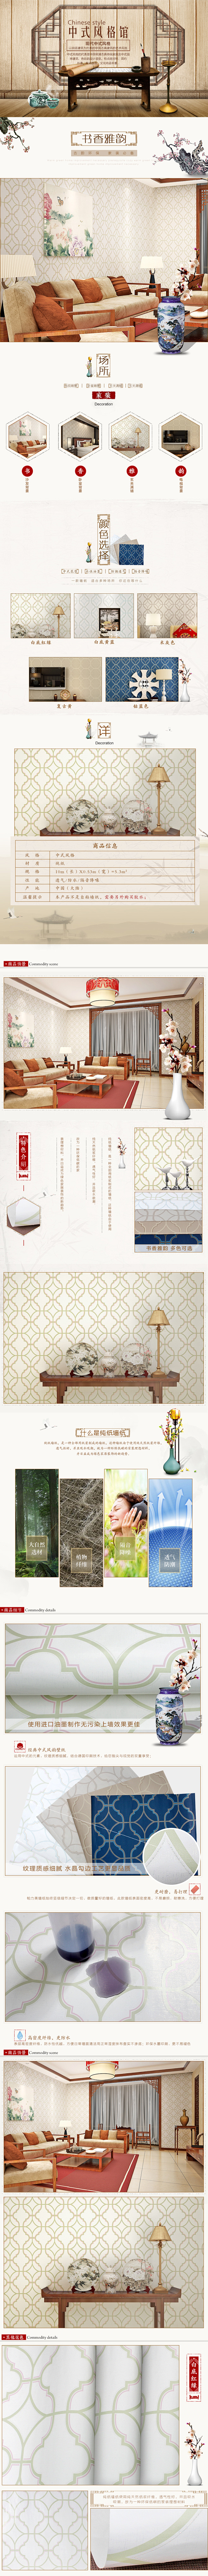 中式详情页首页 壁纸墙纸海报设计排版复古